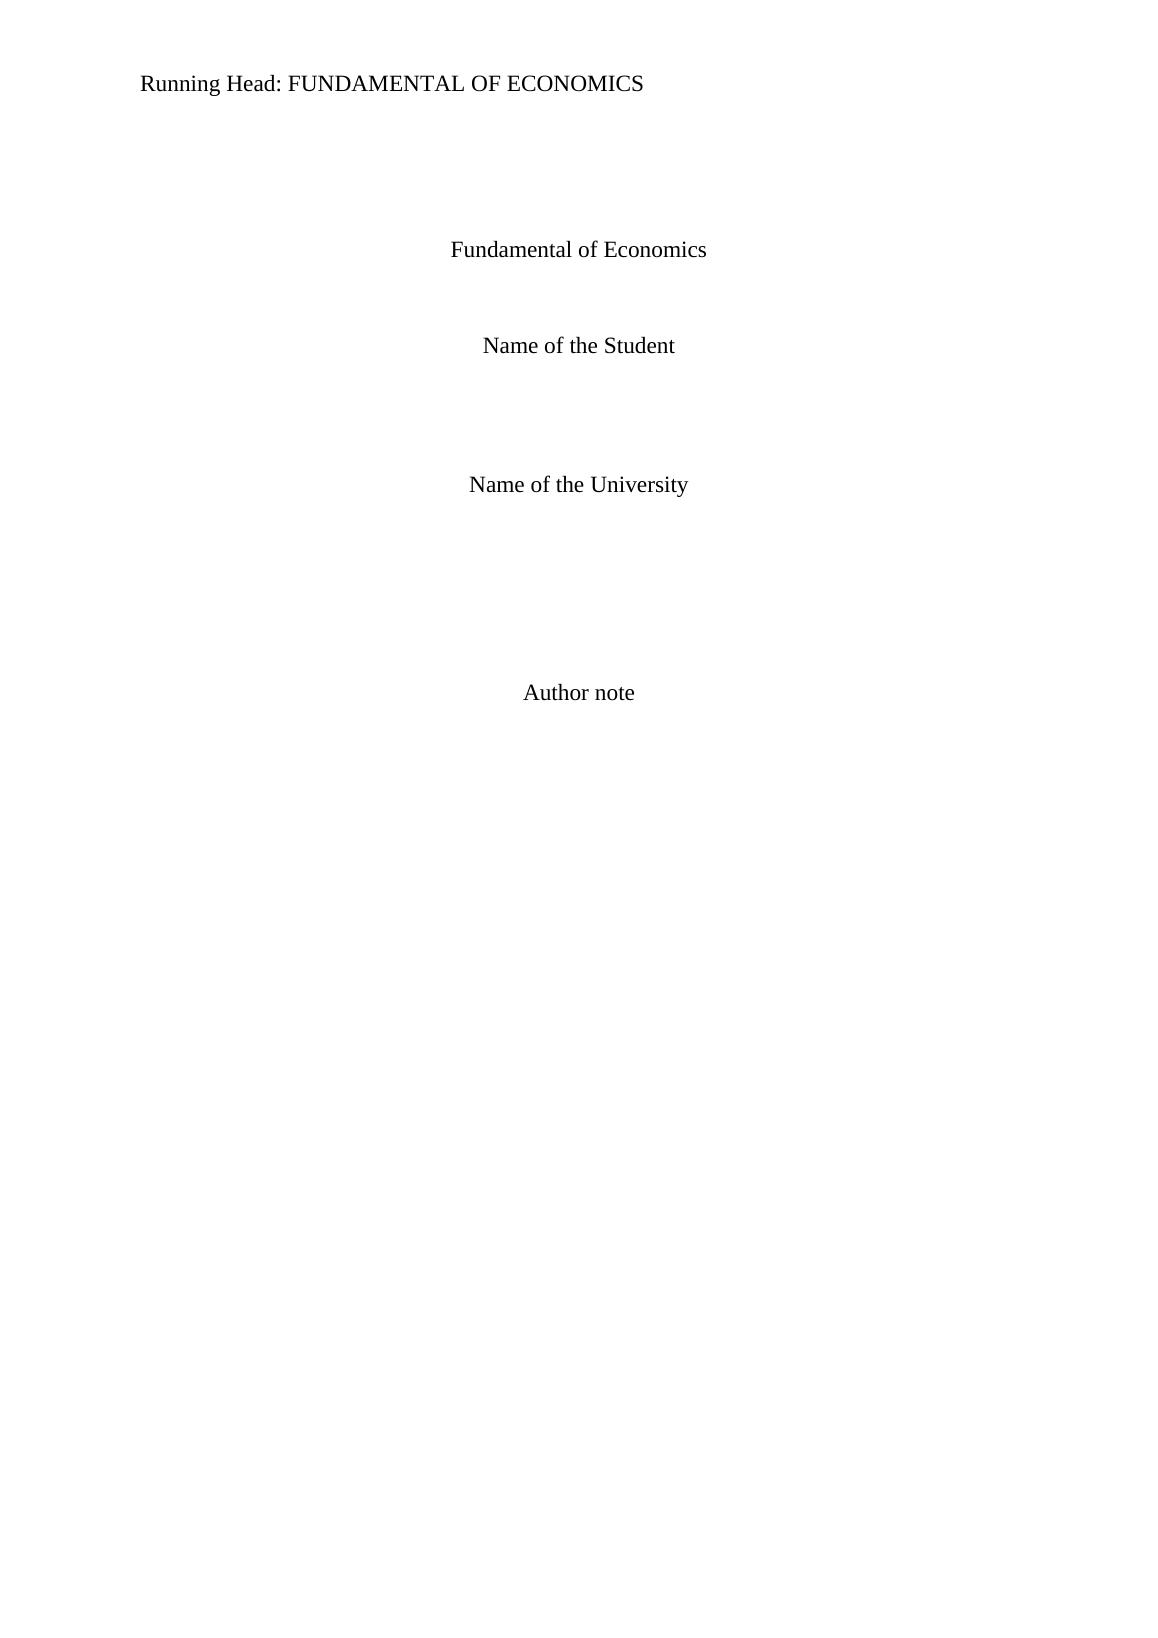 Assignment on Fundamentals of Economics (pdf)_1